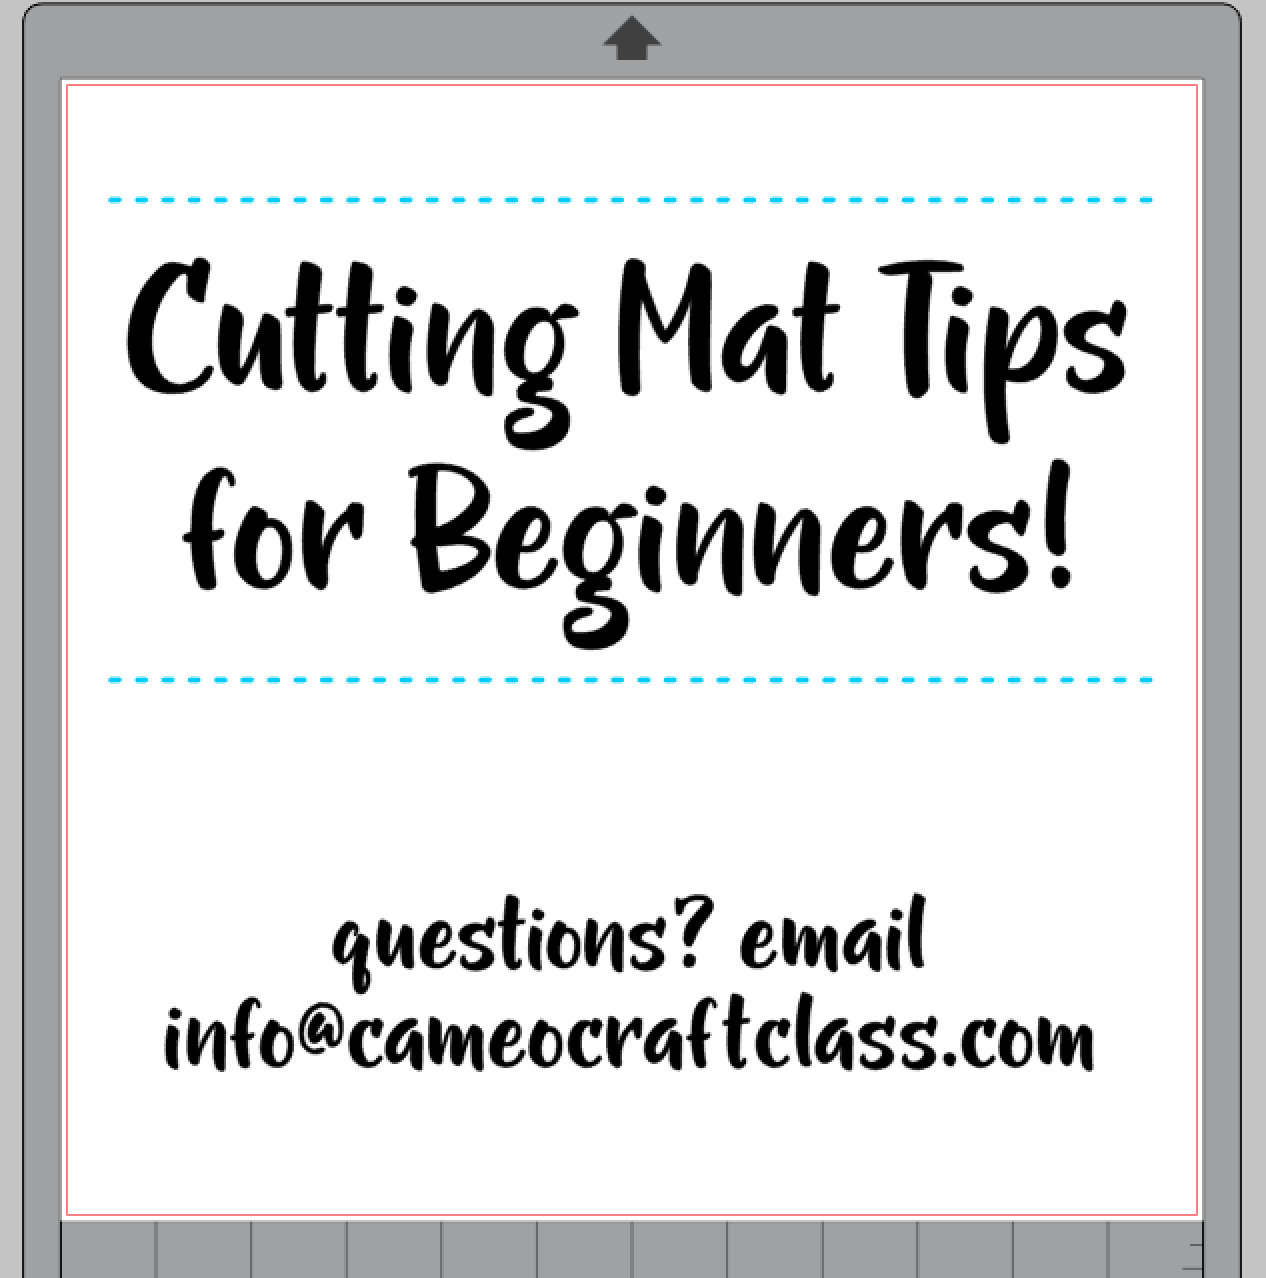 Cutting Mat Tips for Beginners